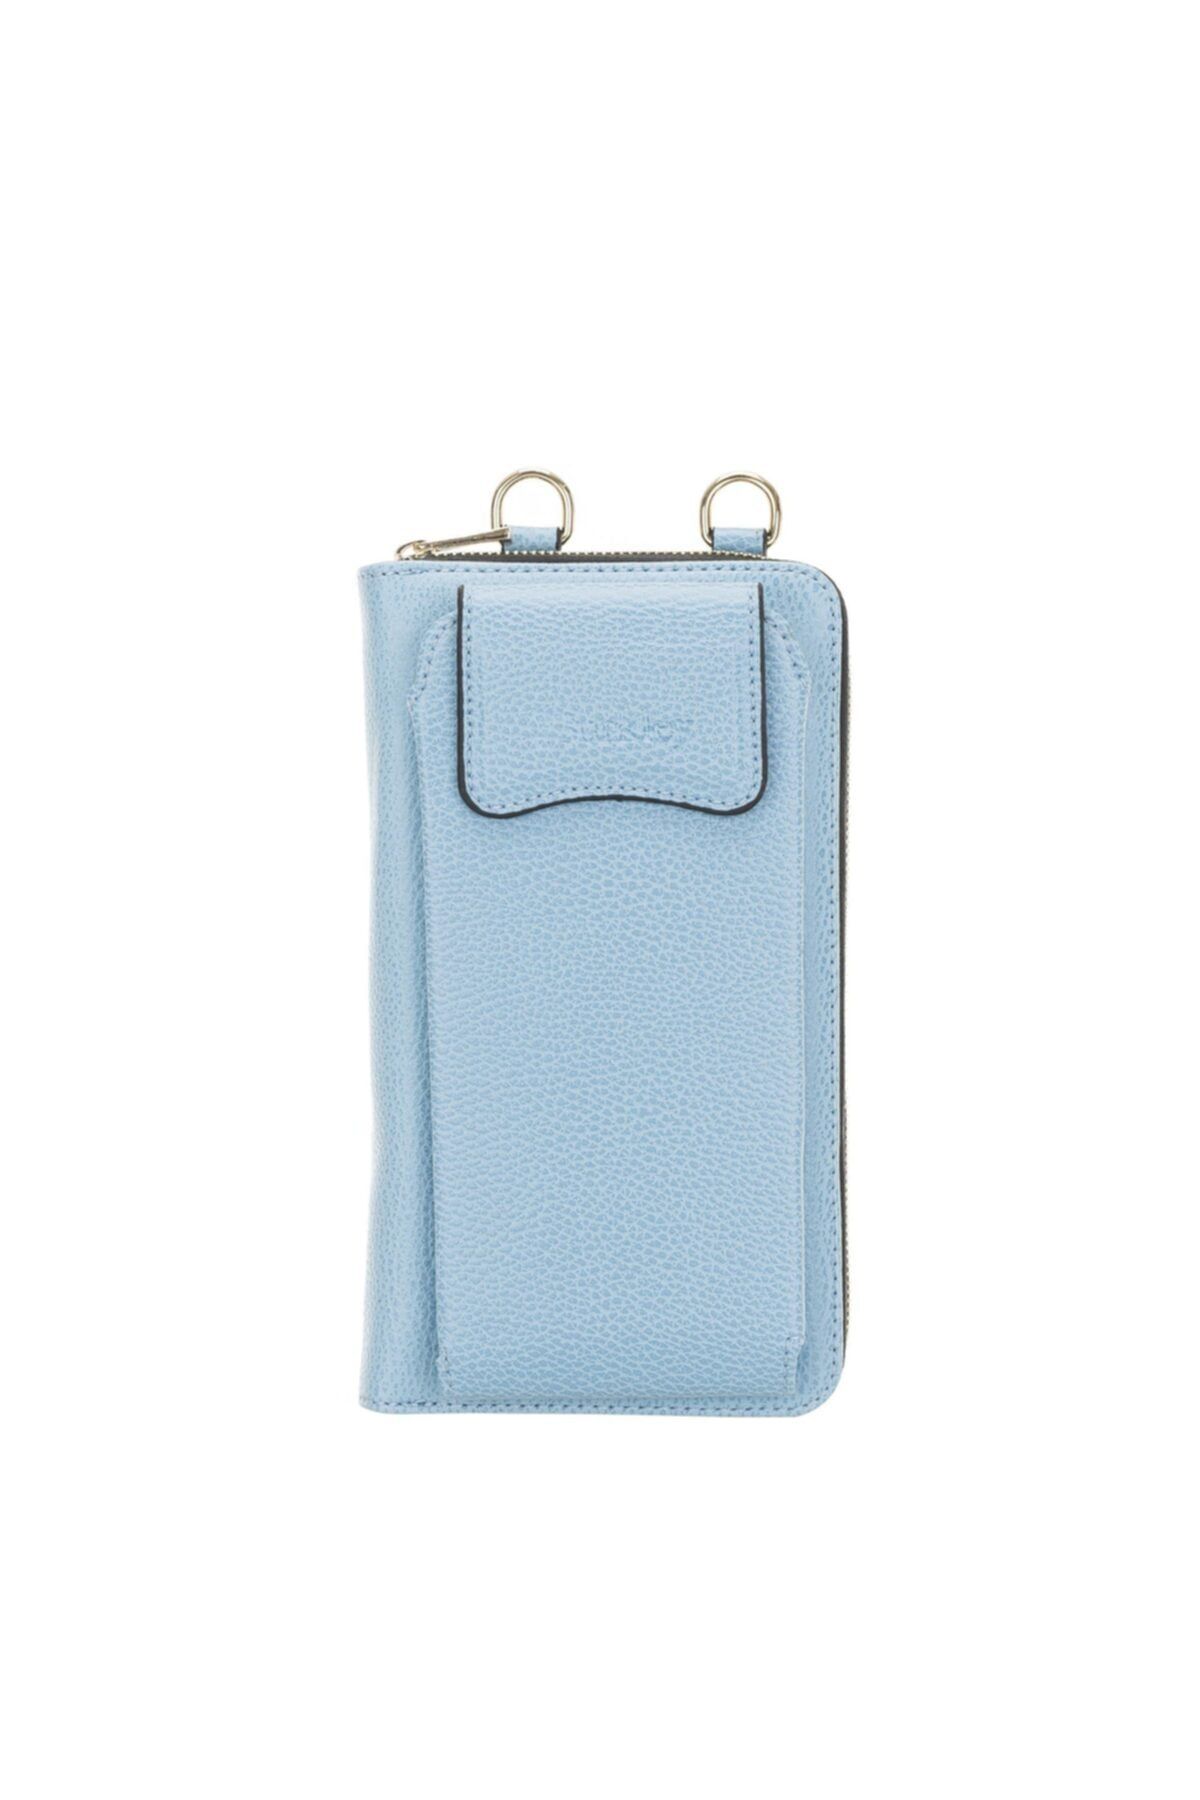 Burkley Joan Kadın Çanta Cüzdan Telefon Kılıfı Azur Blau 6097